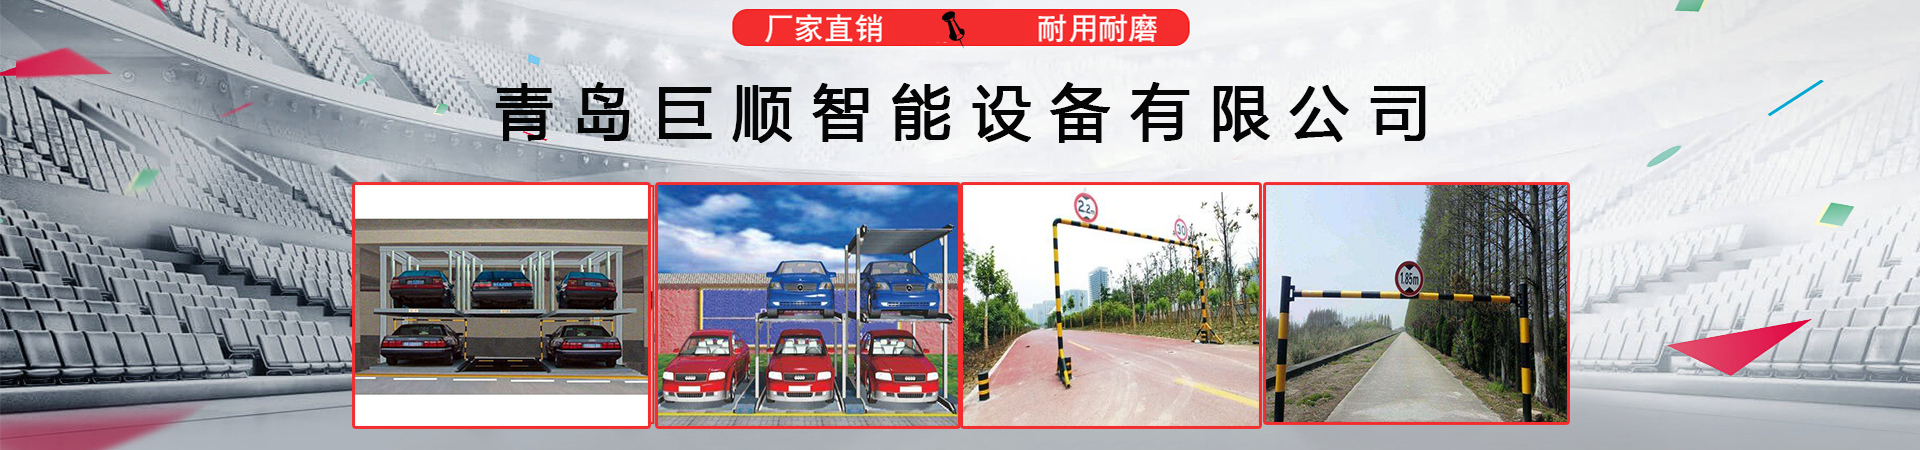 升降车位、深圳本地升降车位、深圳、深圳升降车位